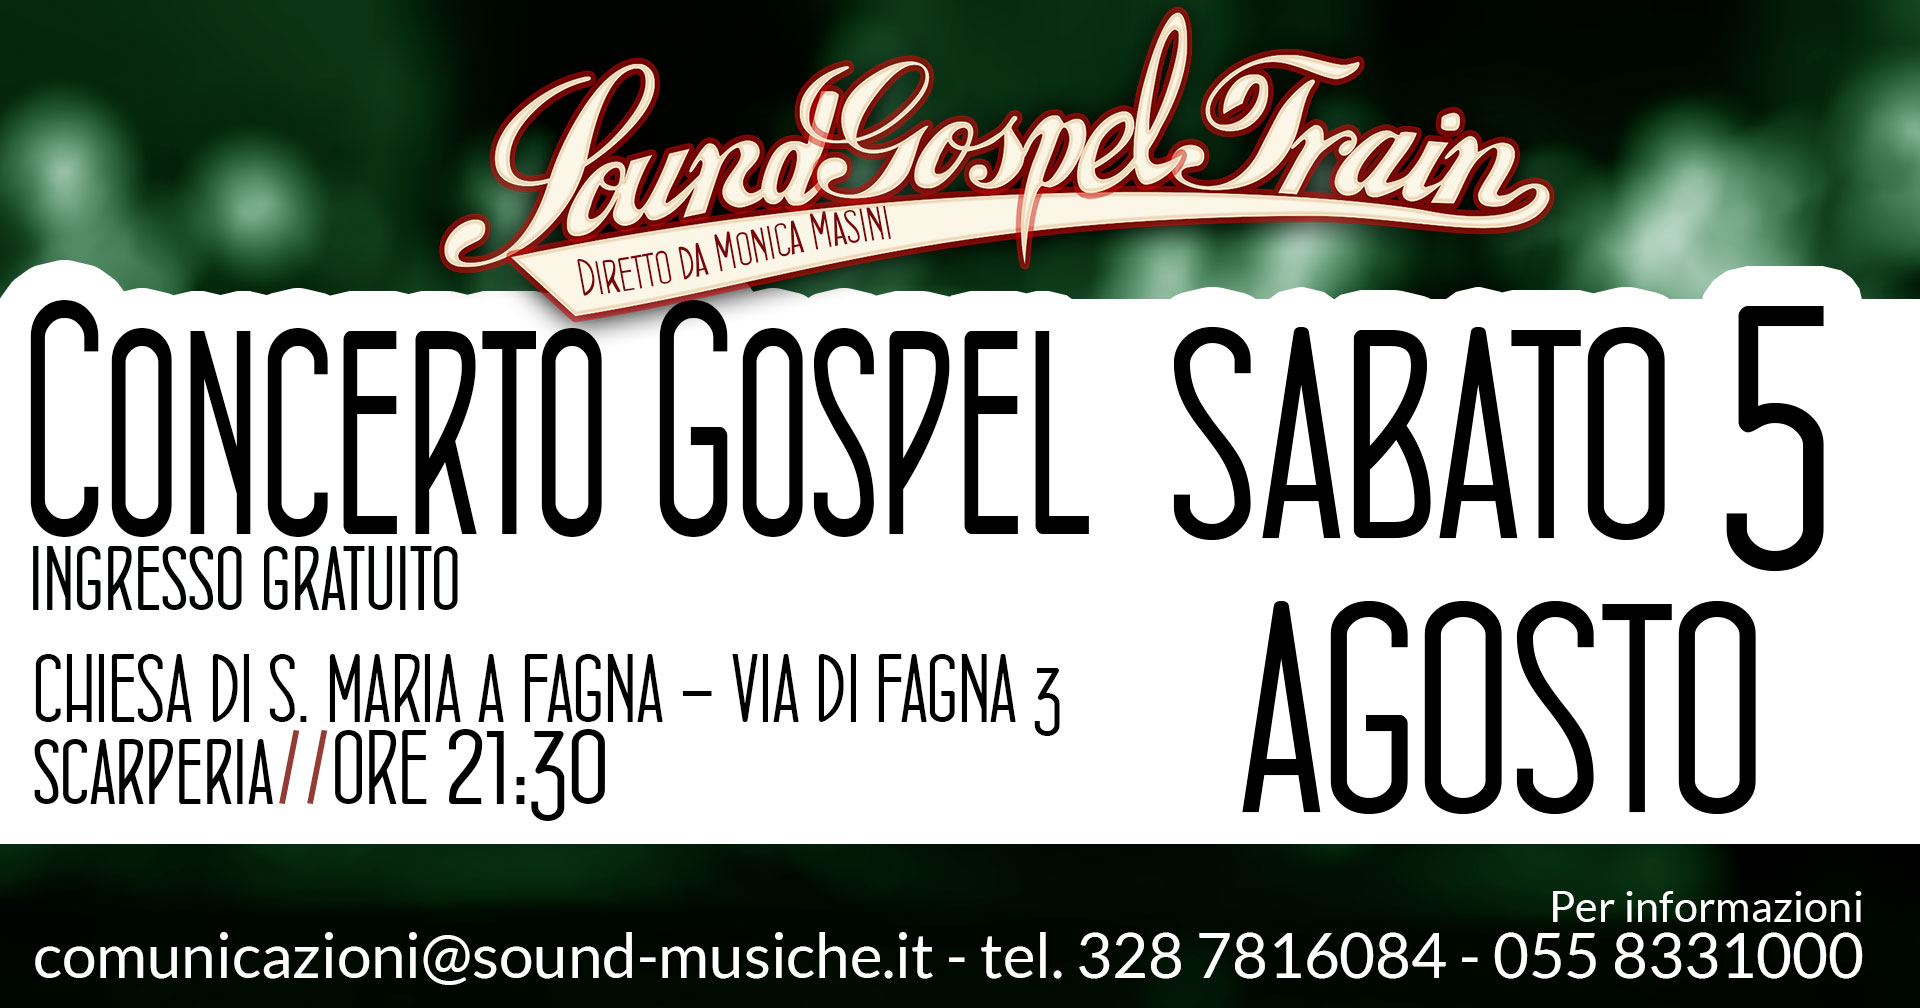 Concerto Gospel live Sabato 5 Agosto ore 21:30 Chiesa di S. Maria a Fagna Scarperia